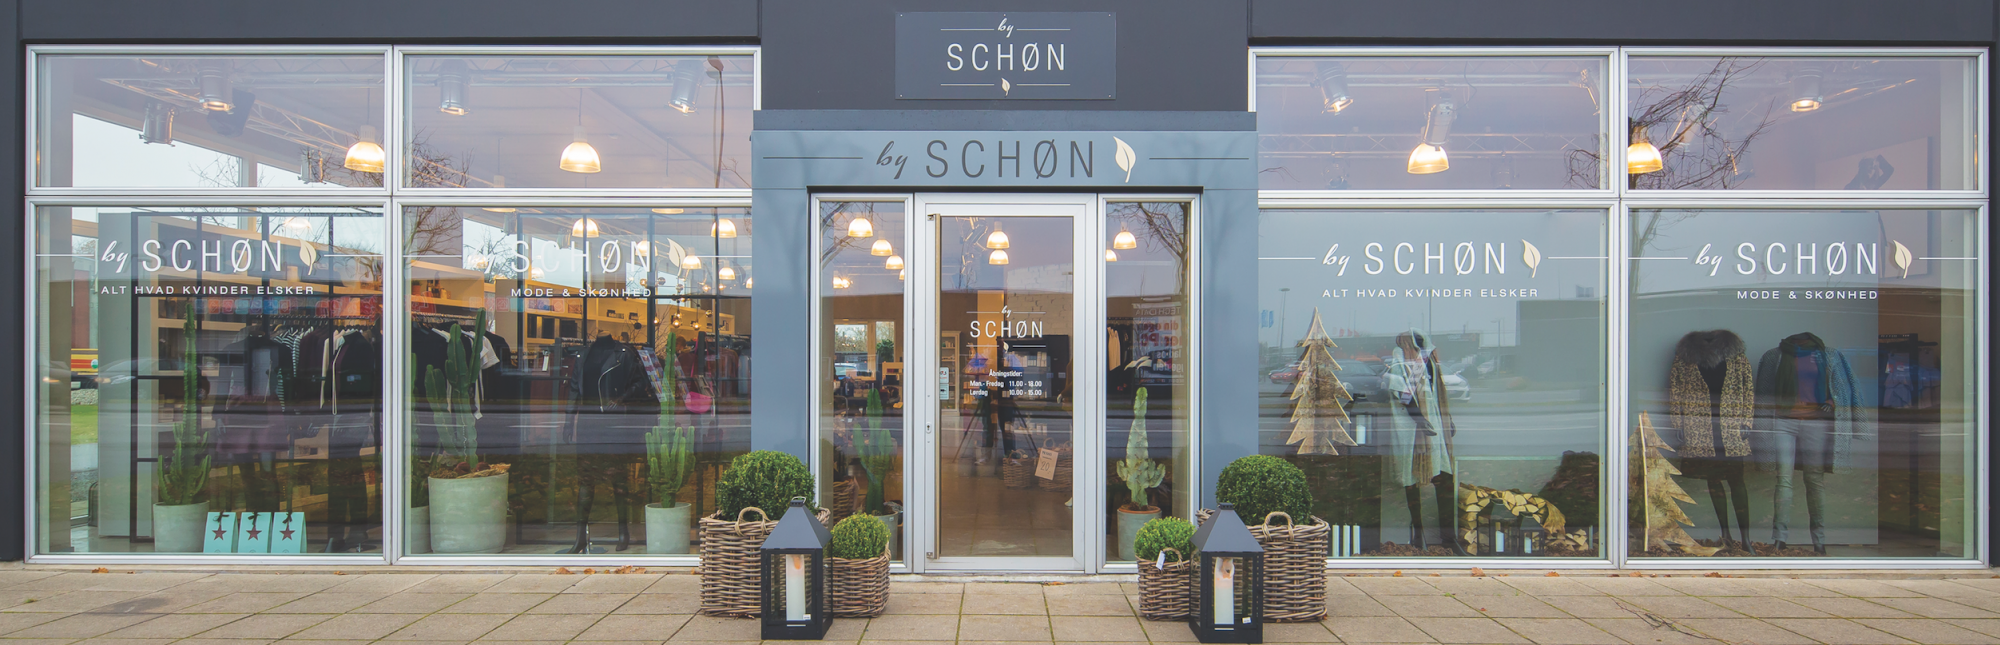 Butikken By Schøn i Aalborg - Billede til Om By Schøn og Lone Schøn Oldhøj 